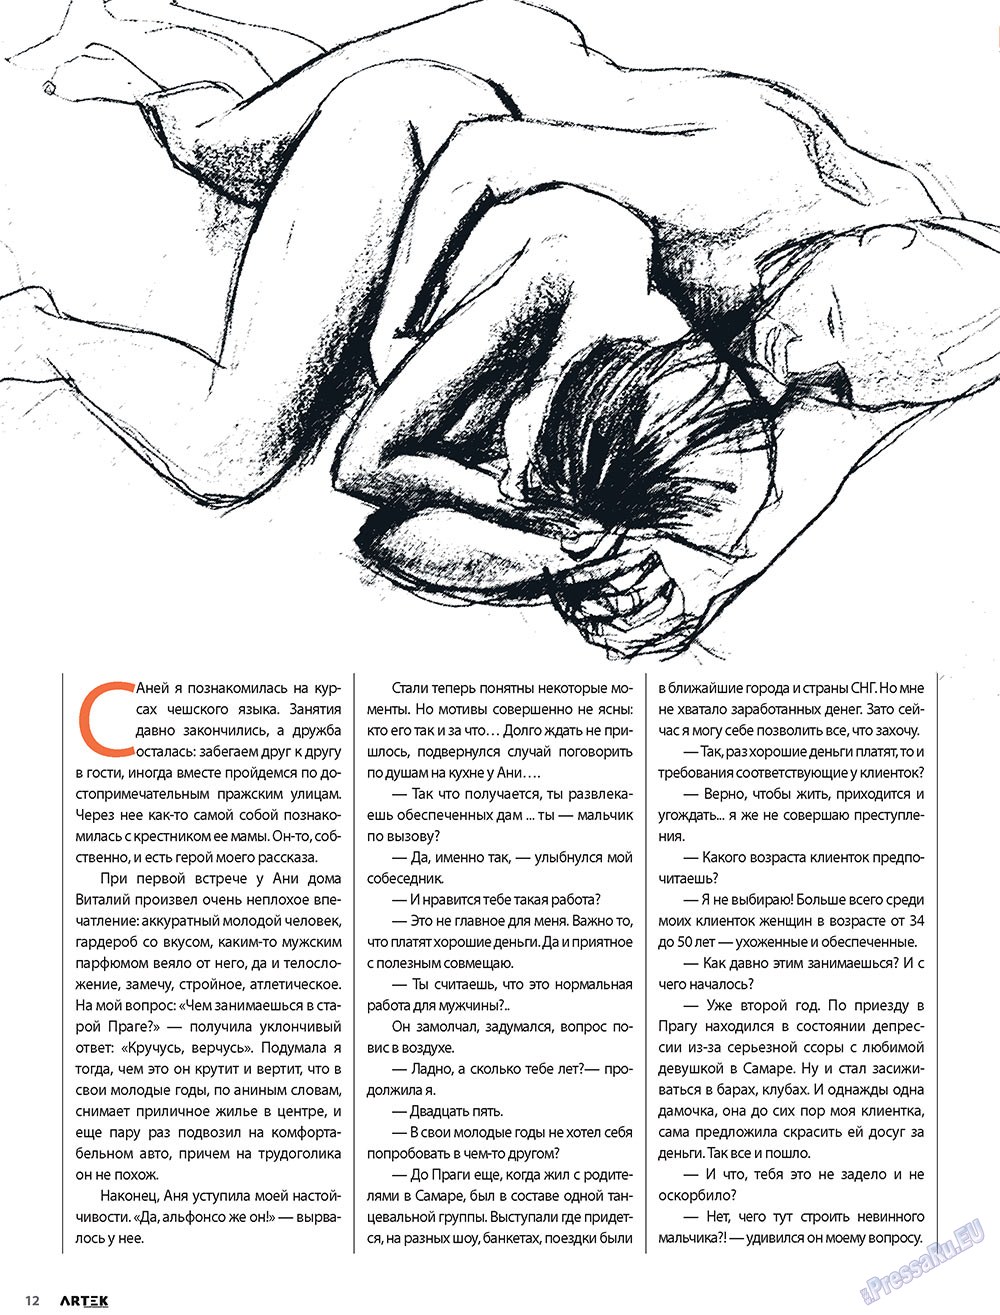 Артек, журнал. 2010 №1 стр.14